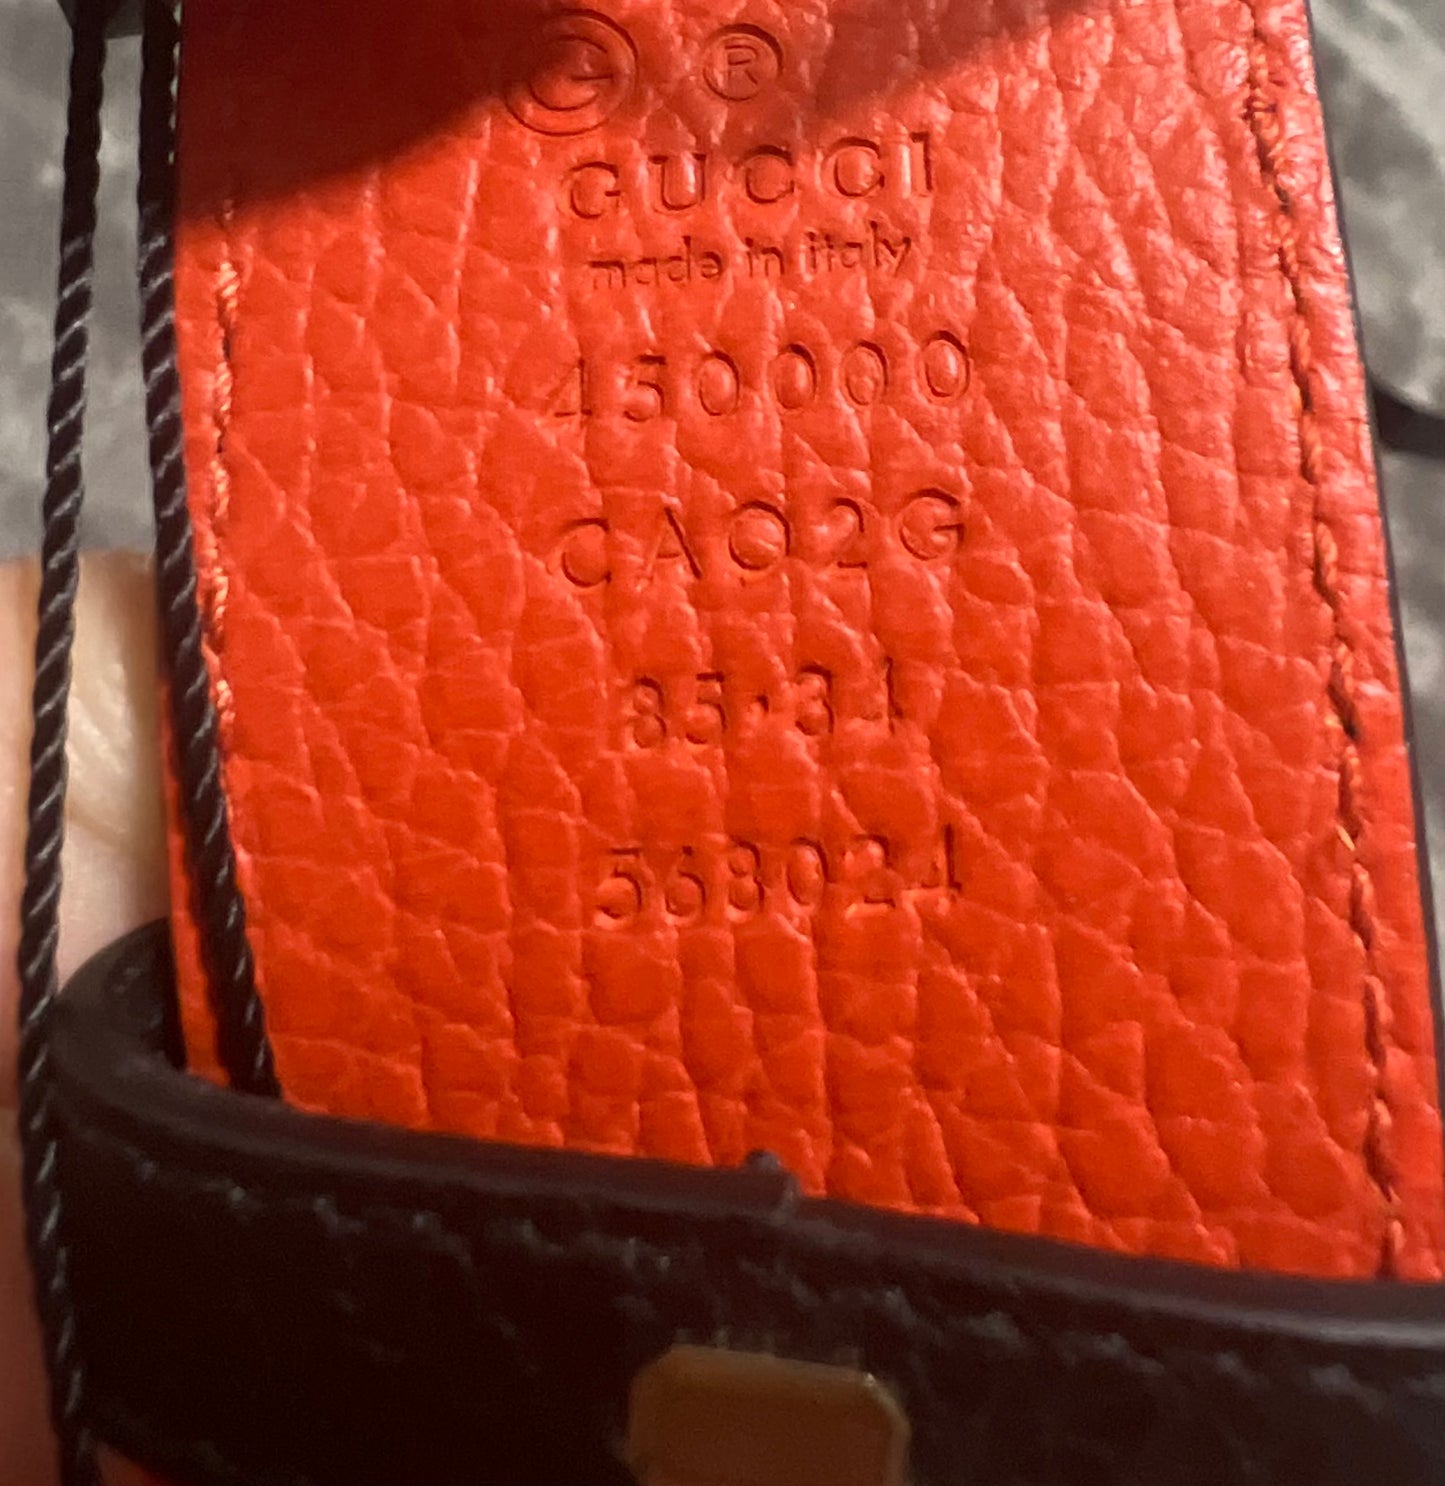 Gucci 1973 Reversible Belt Black Orange Calfskin Leather